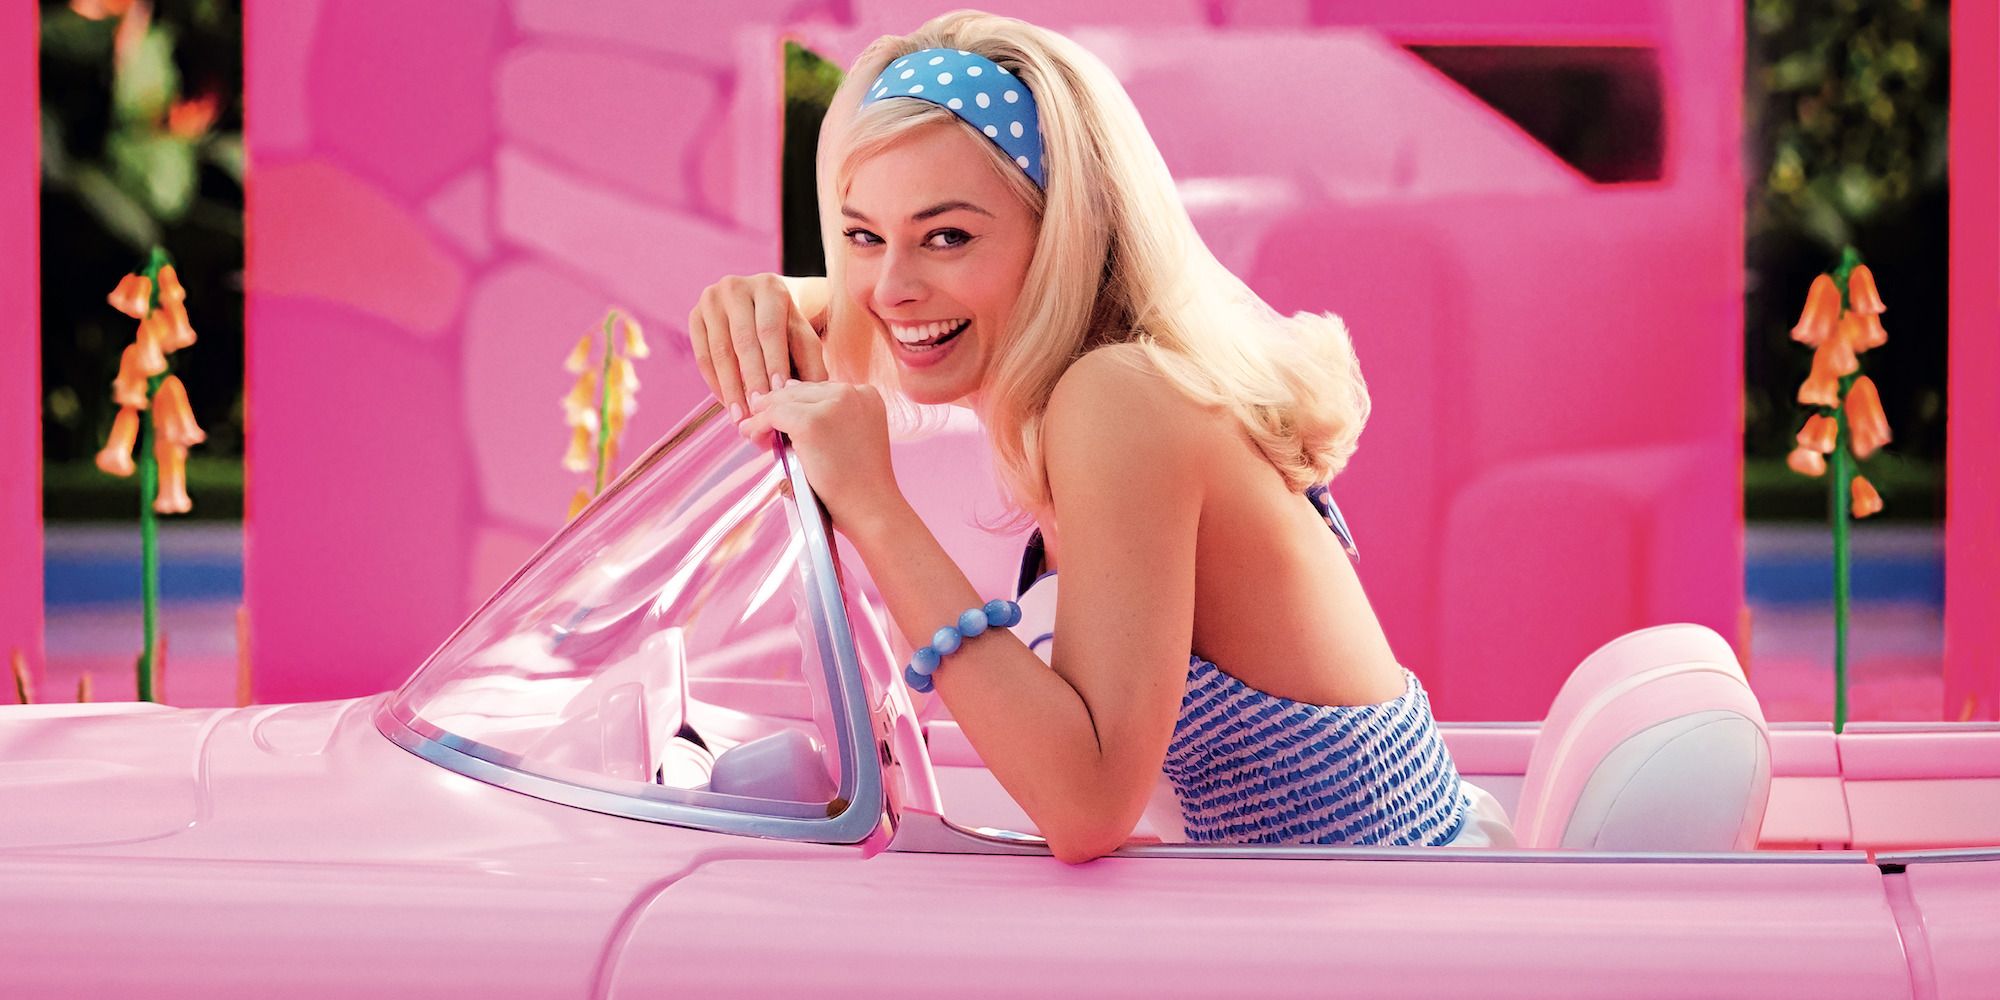 Margot Robbie as Barbie in her car in the movie Barbie.